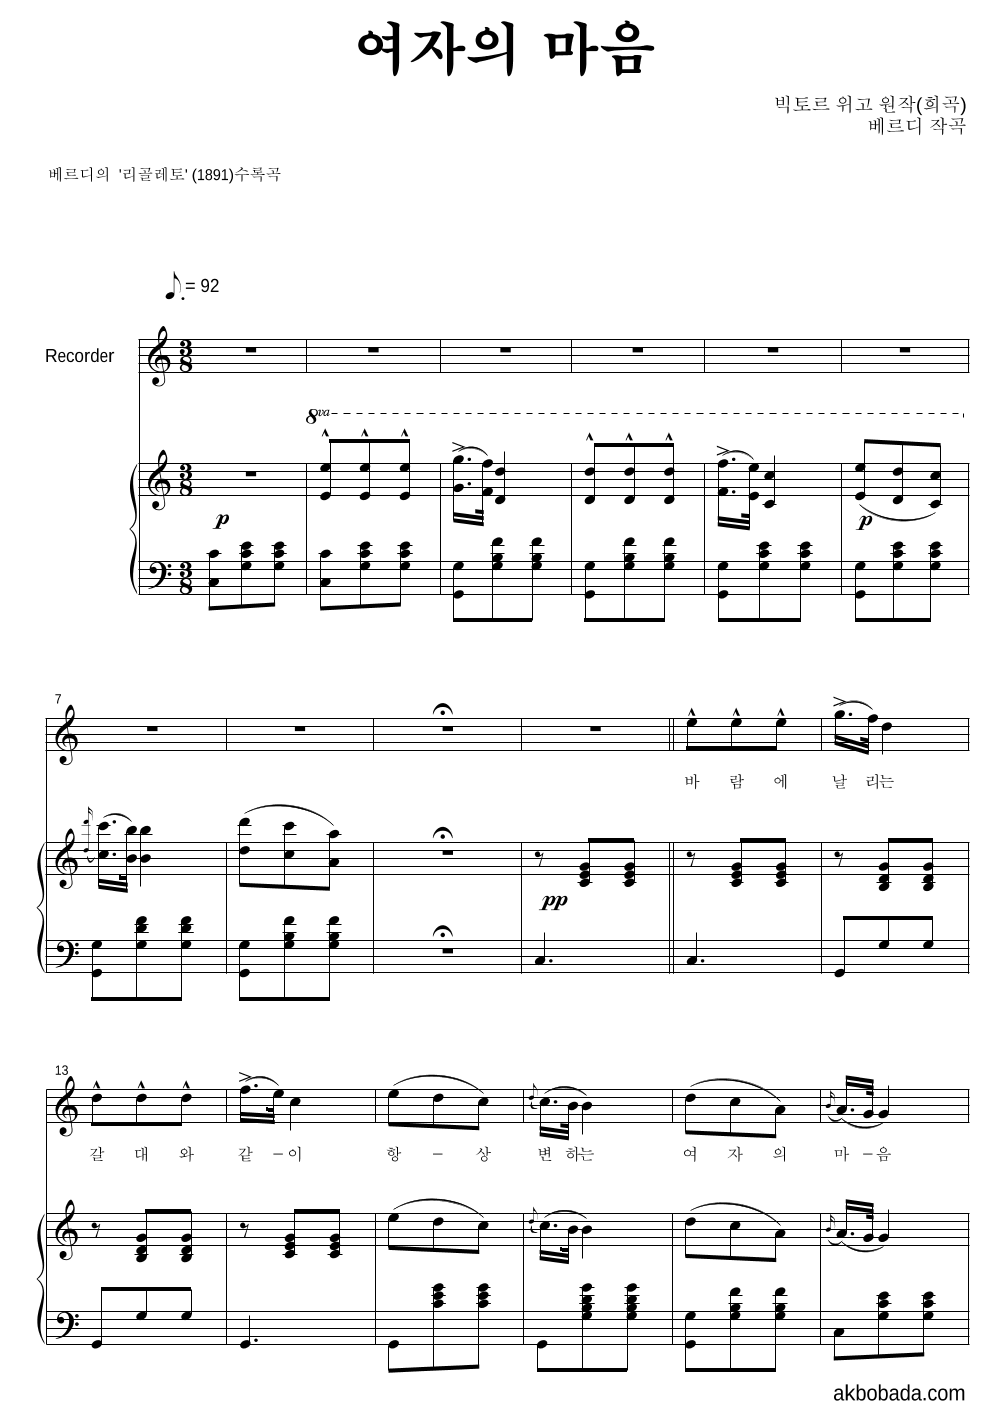 베르디 - 여자의 마음 리코더&피아노 악보 